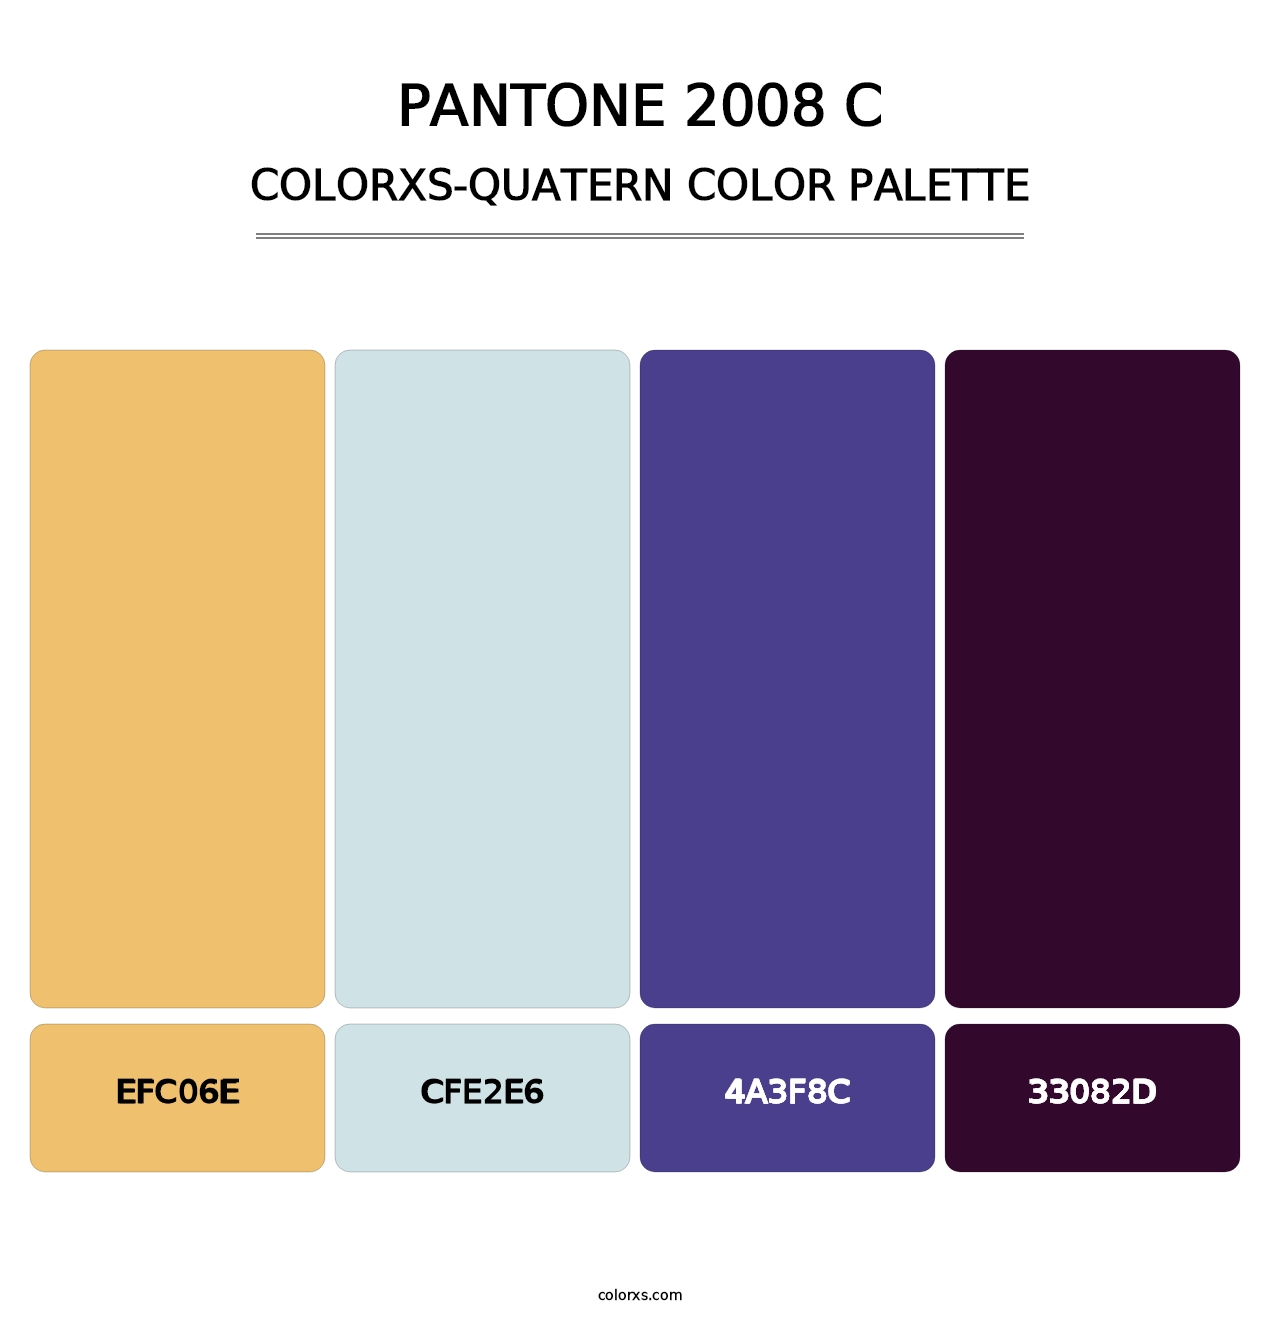 PANTONE 2008 C - Colorxs Quatern Palette